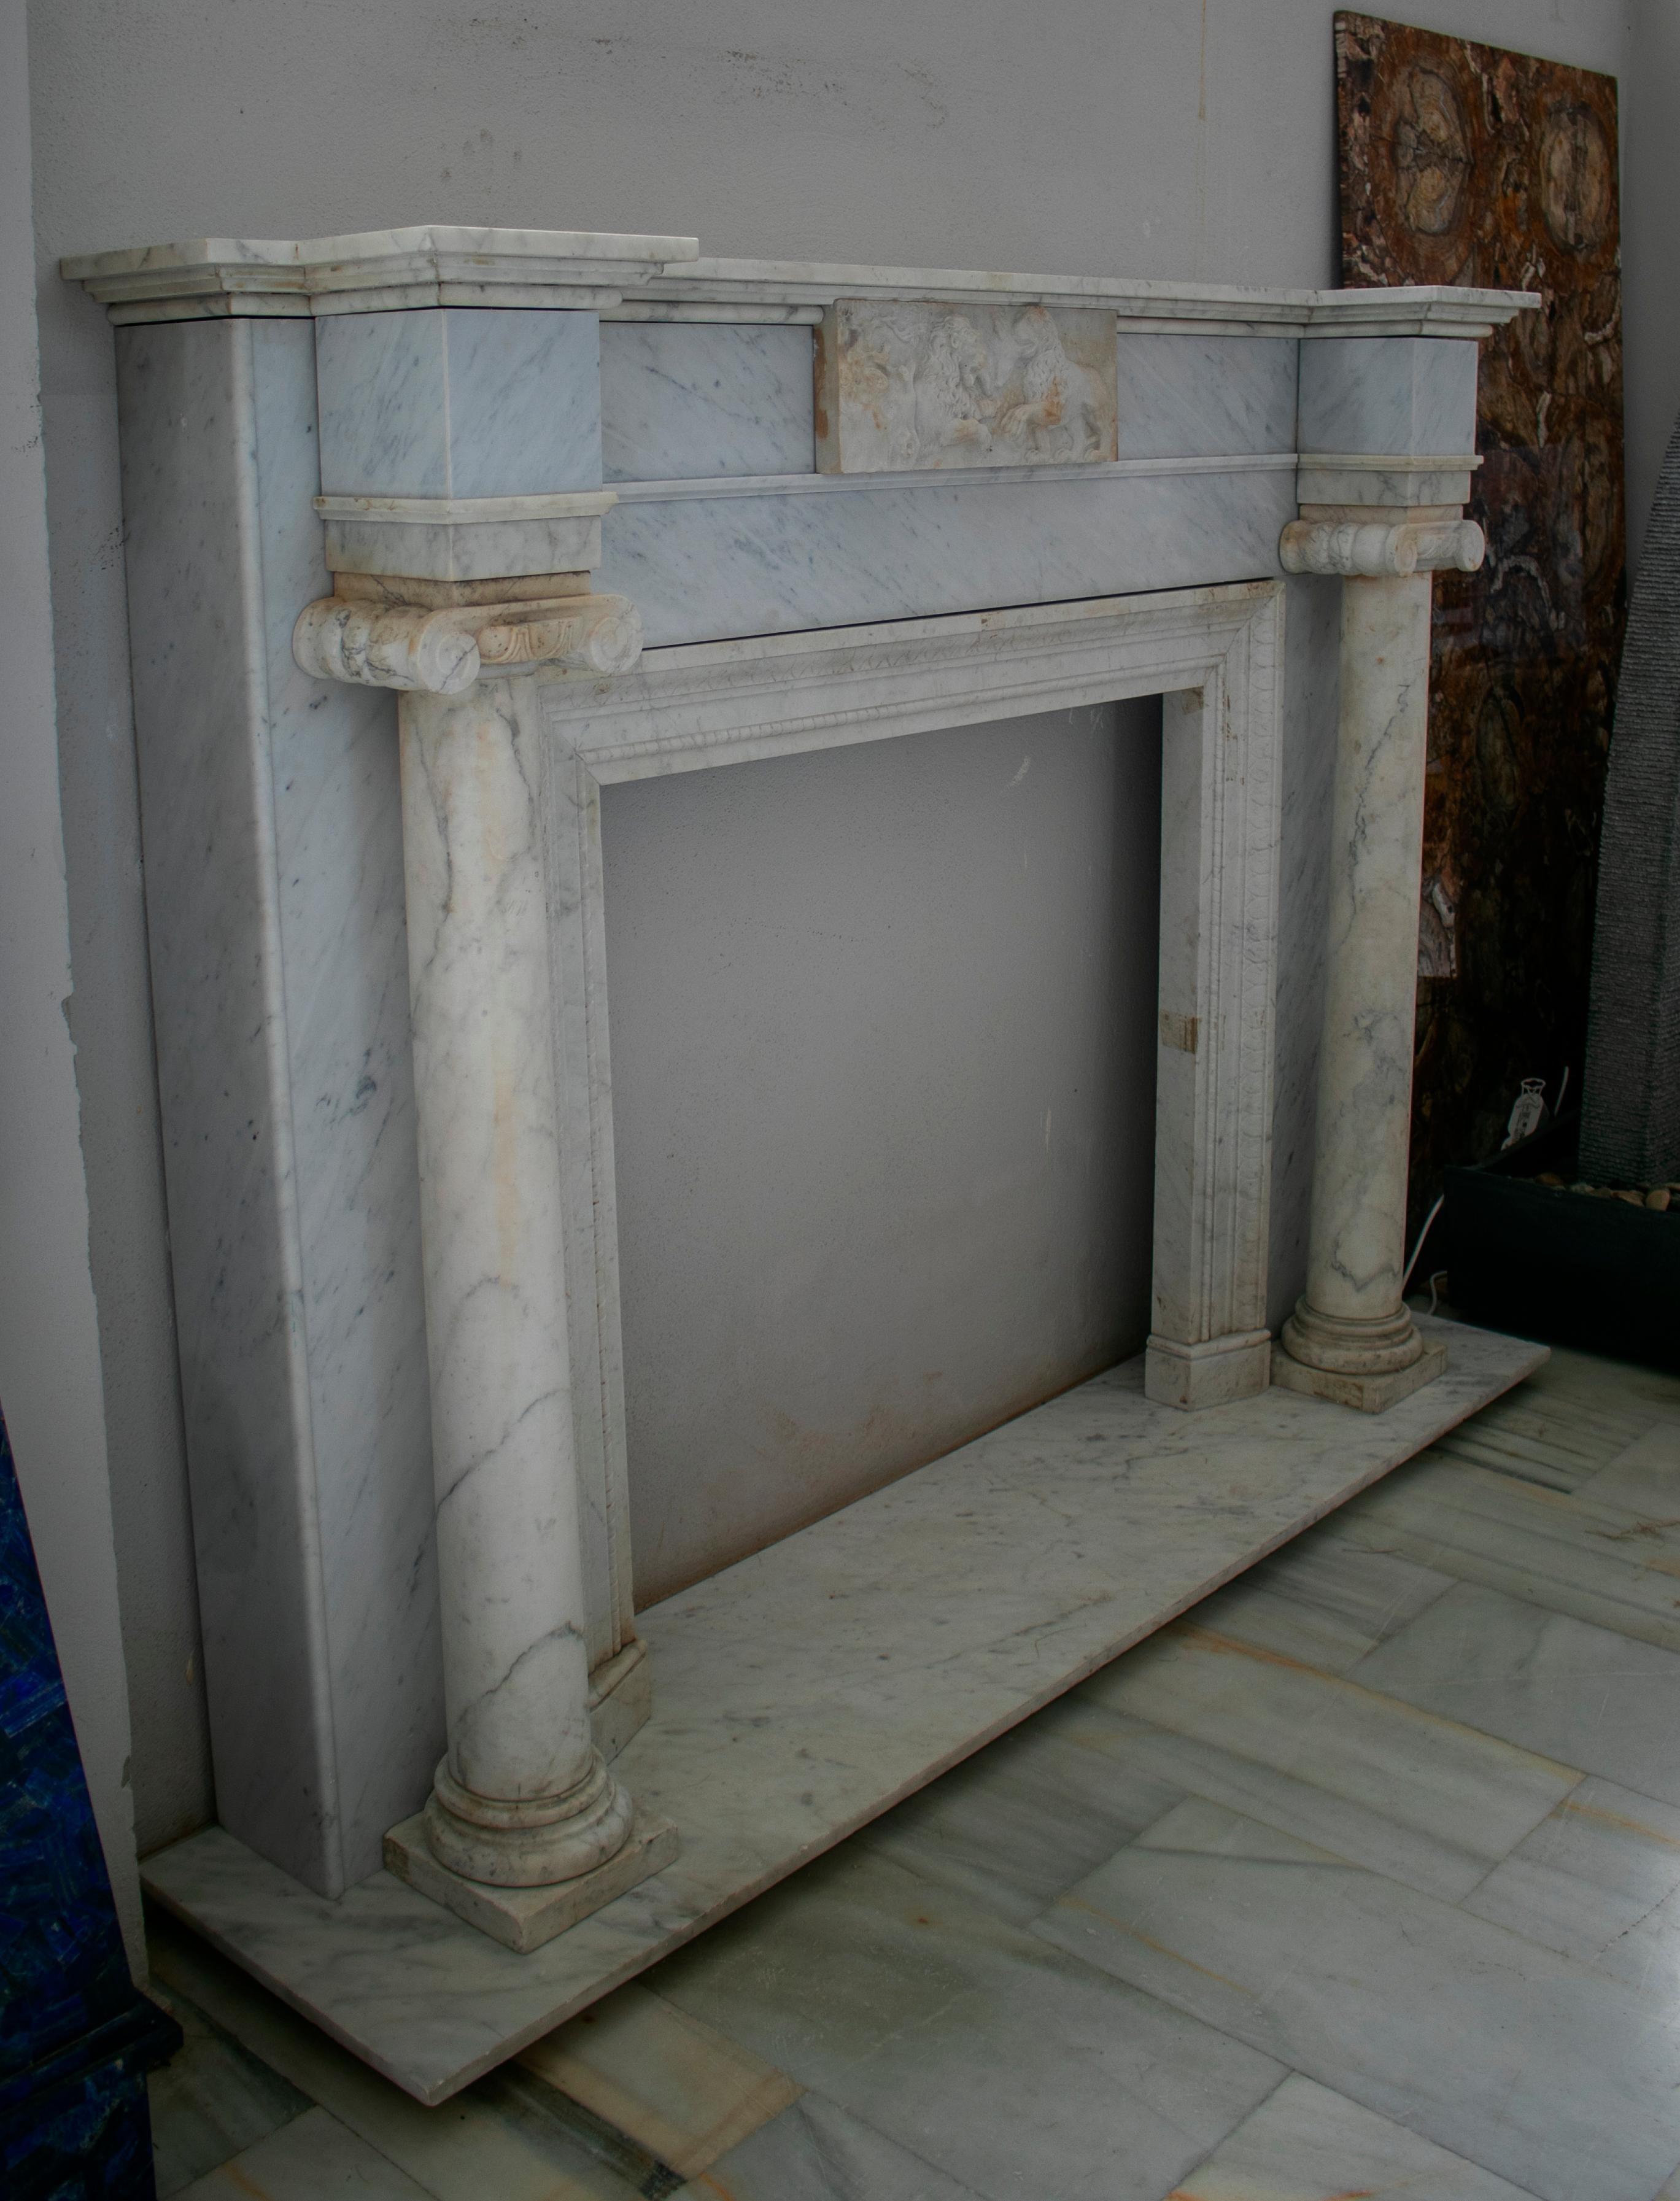 cheminée anglaise des années 1950 en marbre blanc sculpté à la main, flanquée d'une paire de colonnes ioniques.

Mesures intérieures : 101 x 105 cm.
    